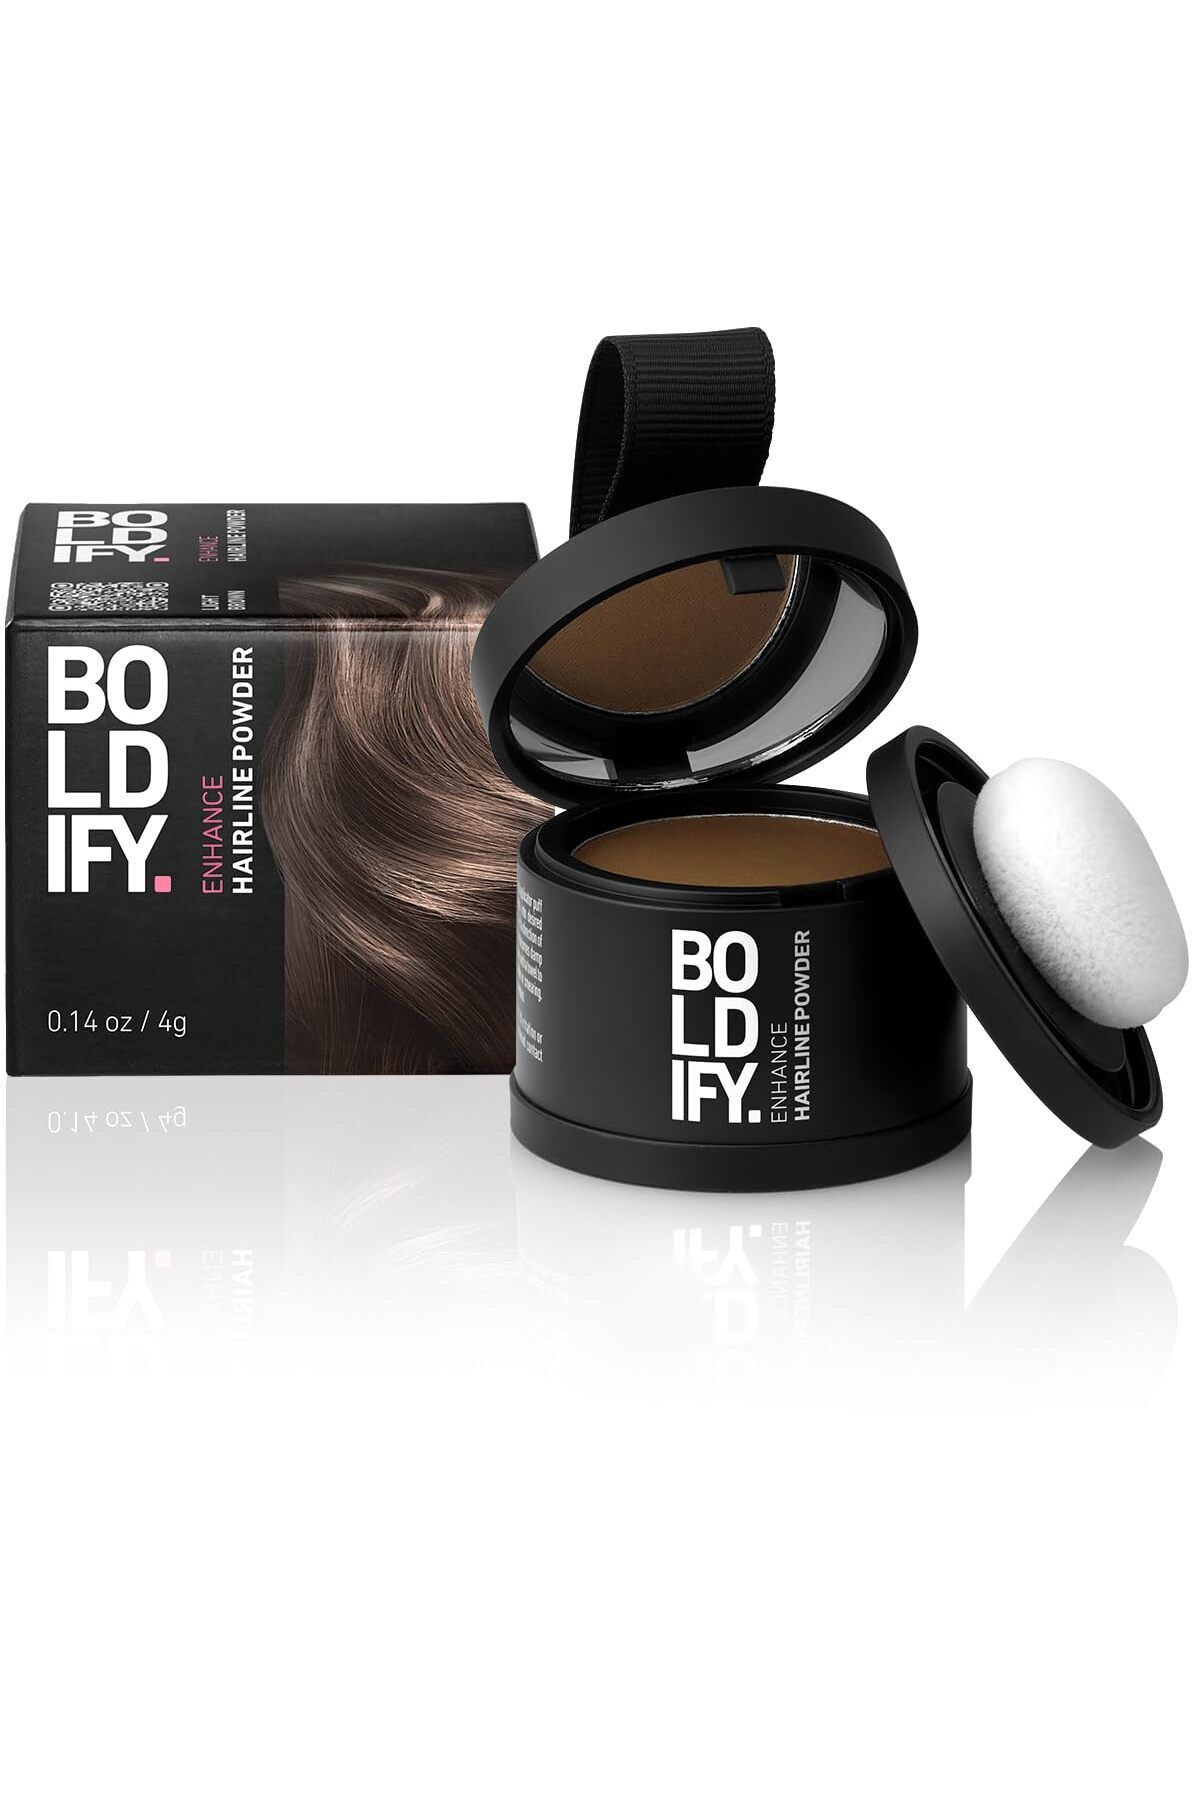 Boldify Saç Tozu Açık Kahve, Dolgunlaştırıcı Topik Tozu, Saç Dökülmesini Gizler & 48 saat etkili